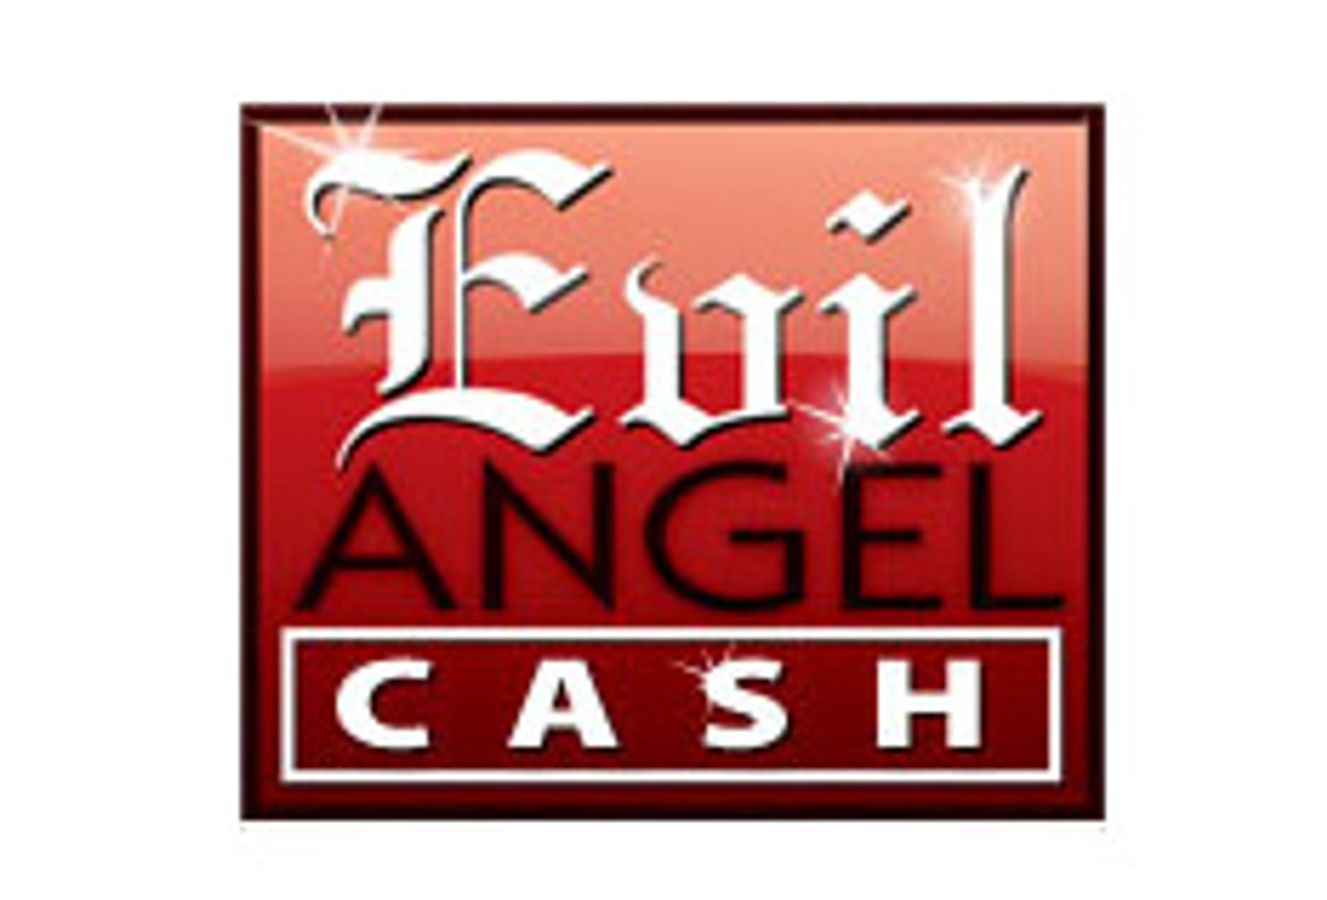 Evil Angel Cash